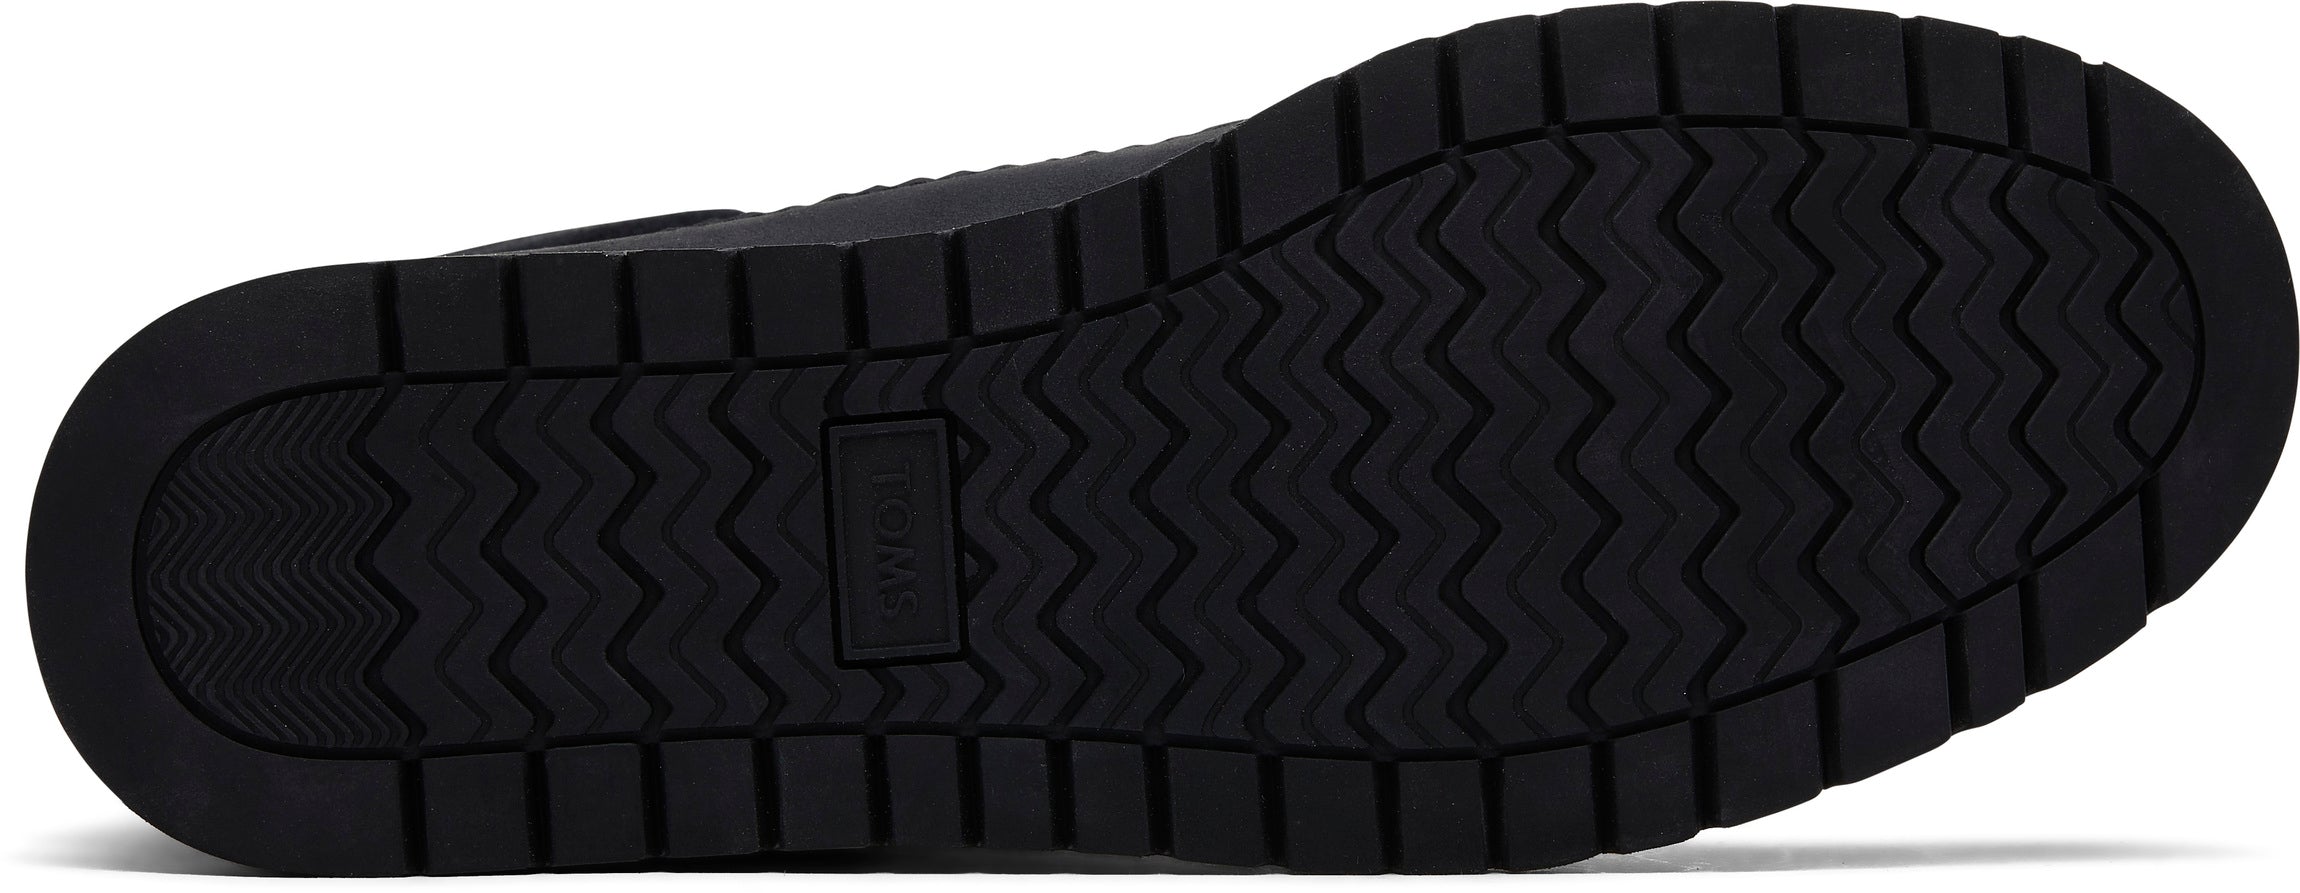 Dámské černé nepromokavé kotníkové boty TOMS Mesa